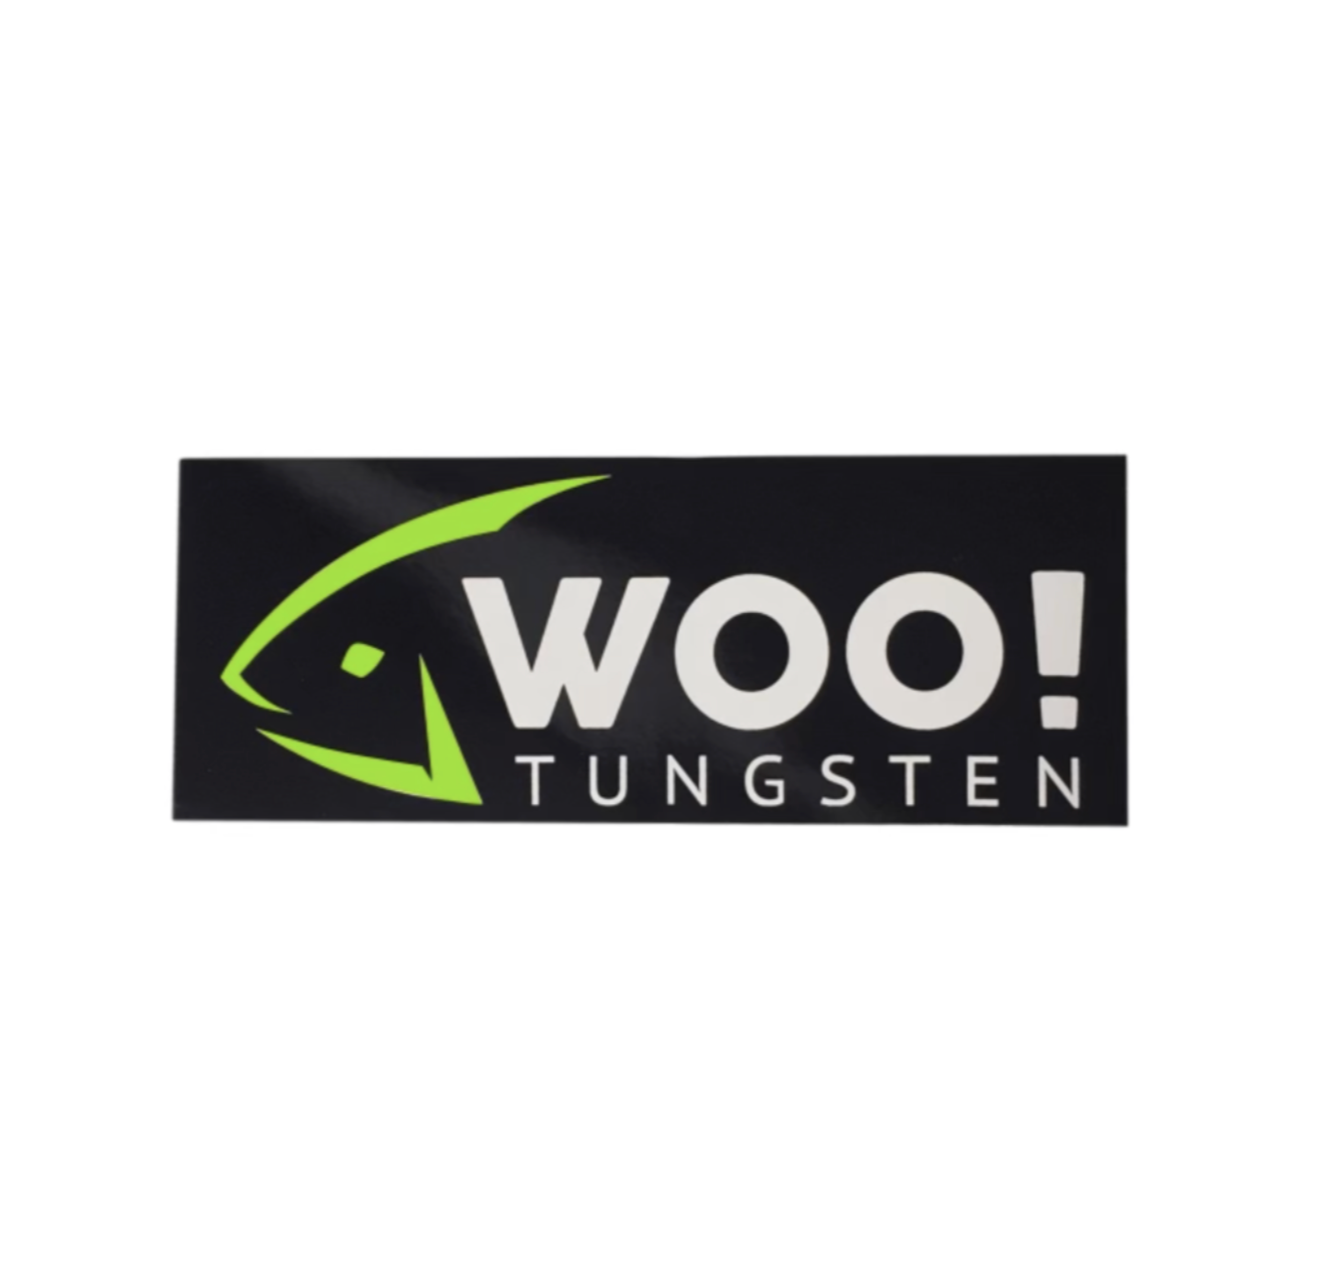 WOO! Tungsten Vinyl Sticker (Green, Black &amp; White)